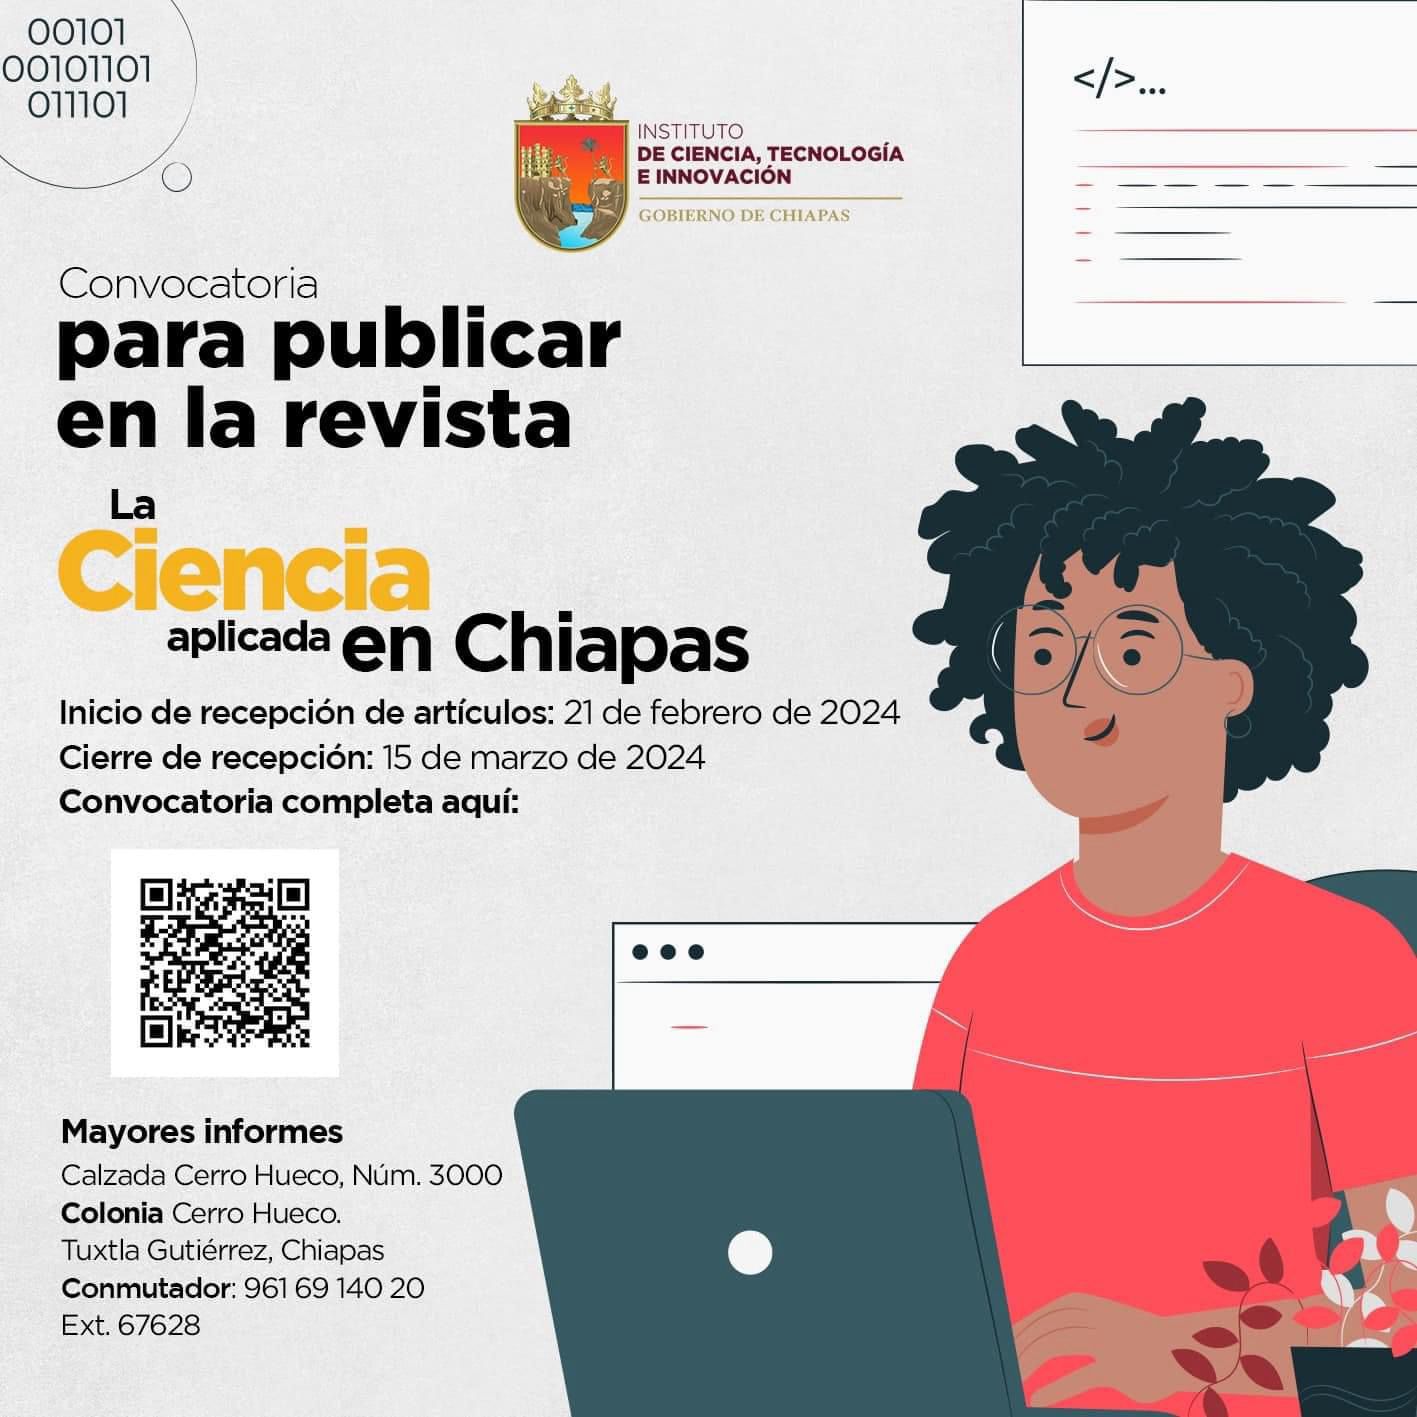 ICTI Chiapas invita a publicar en la revista  La Ciencia Aplicada en Chiapas